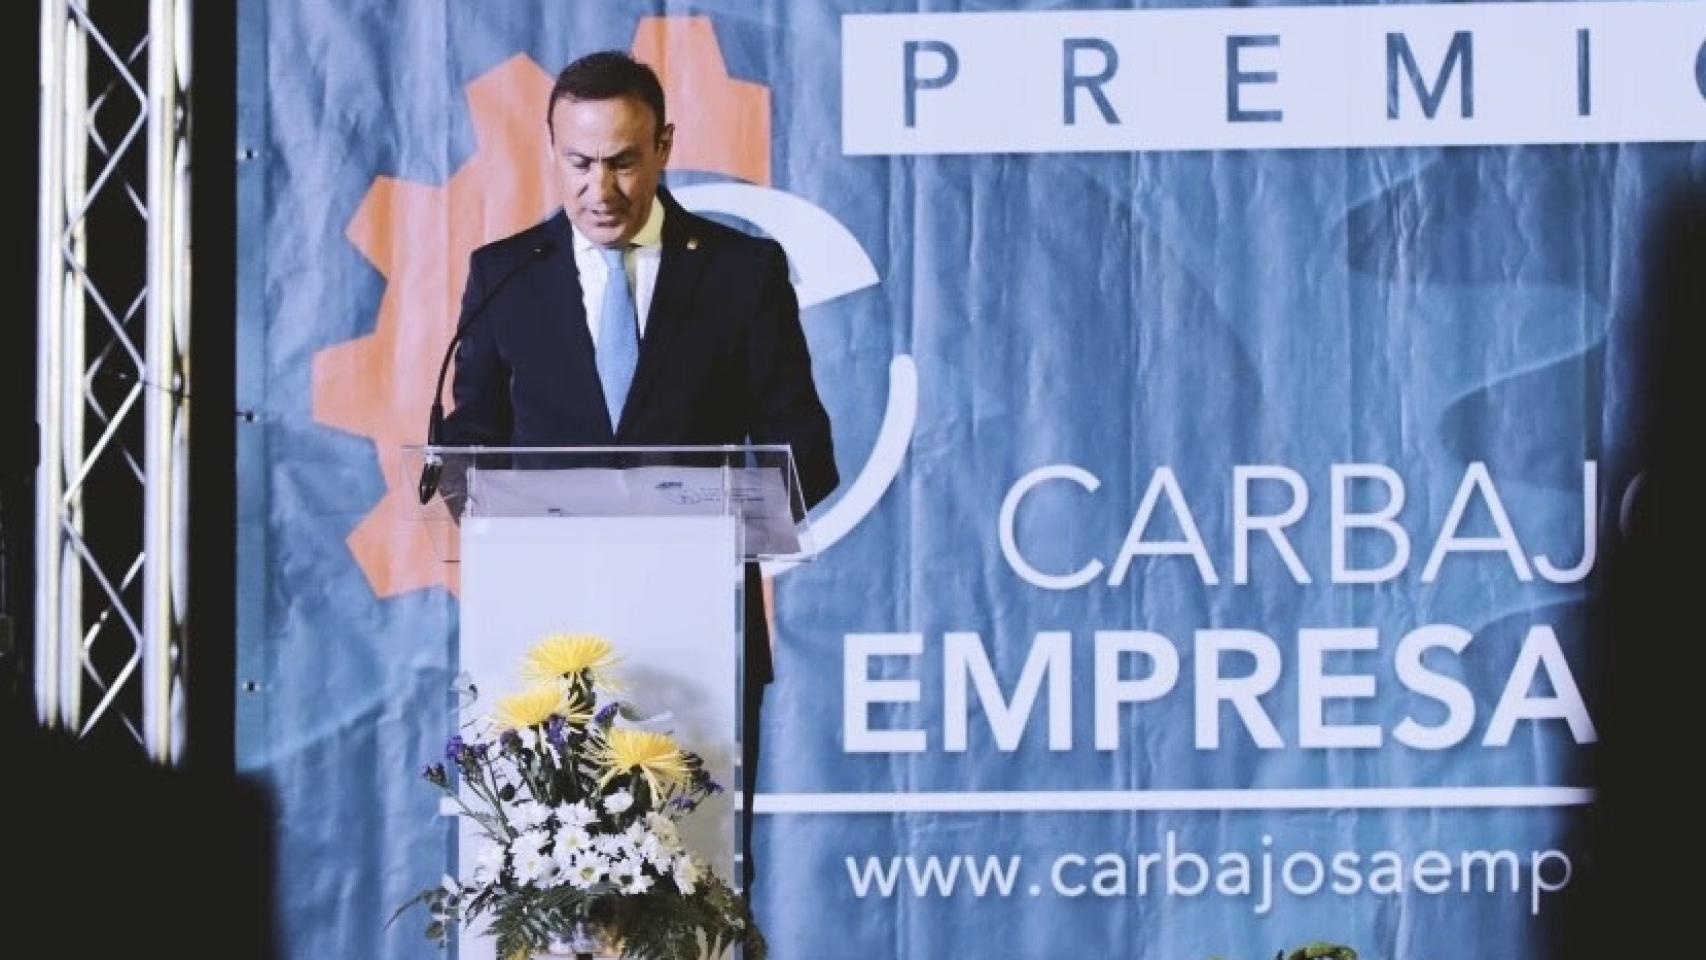 El alcalde de Carbajosa, Pedro Samuel Martín, en los Premios Carbajosa Empresarial 2021